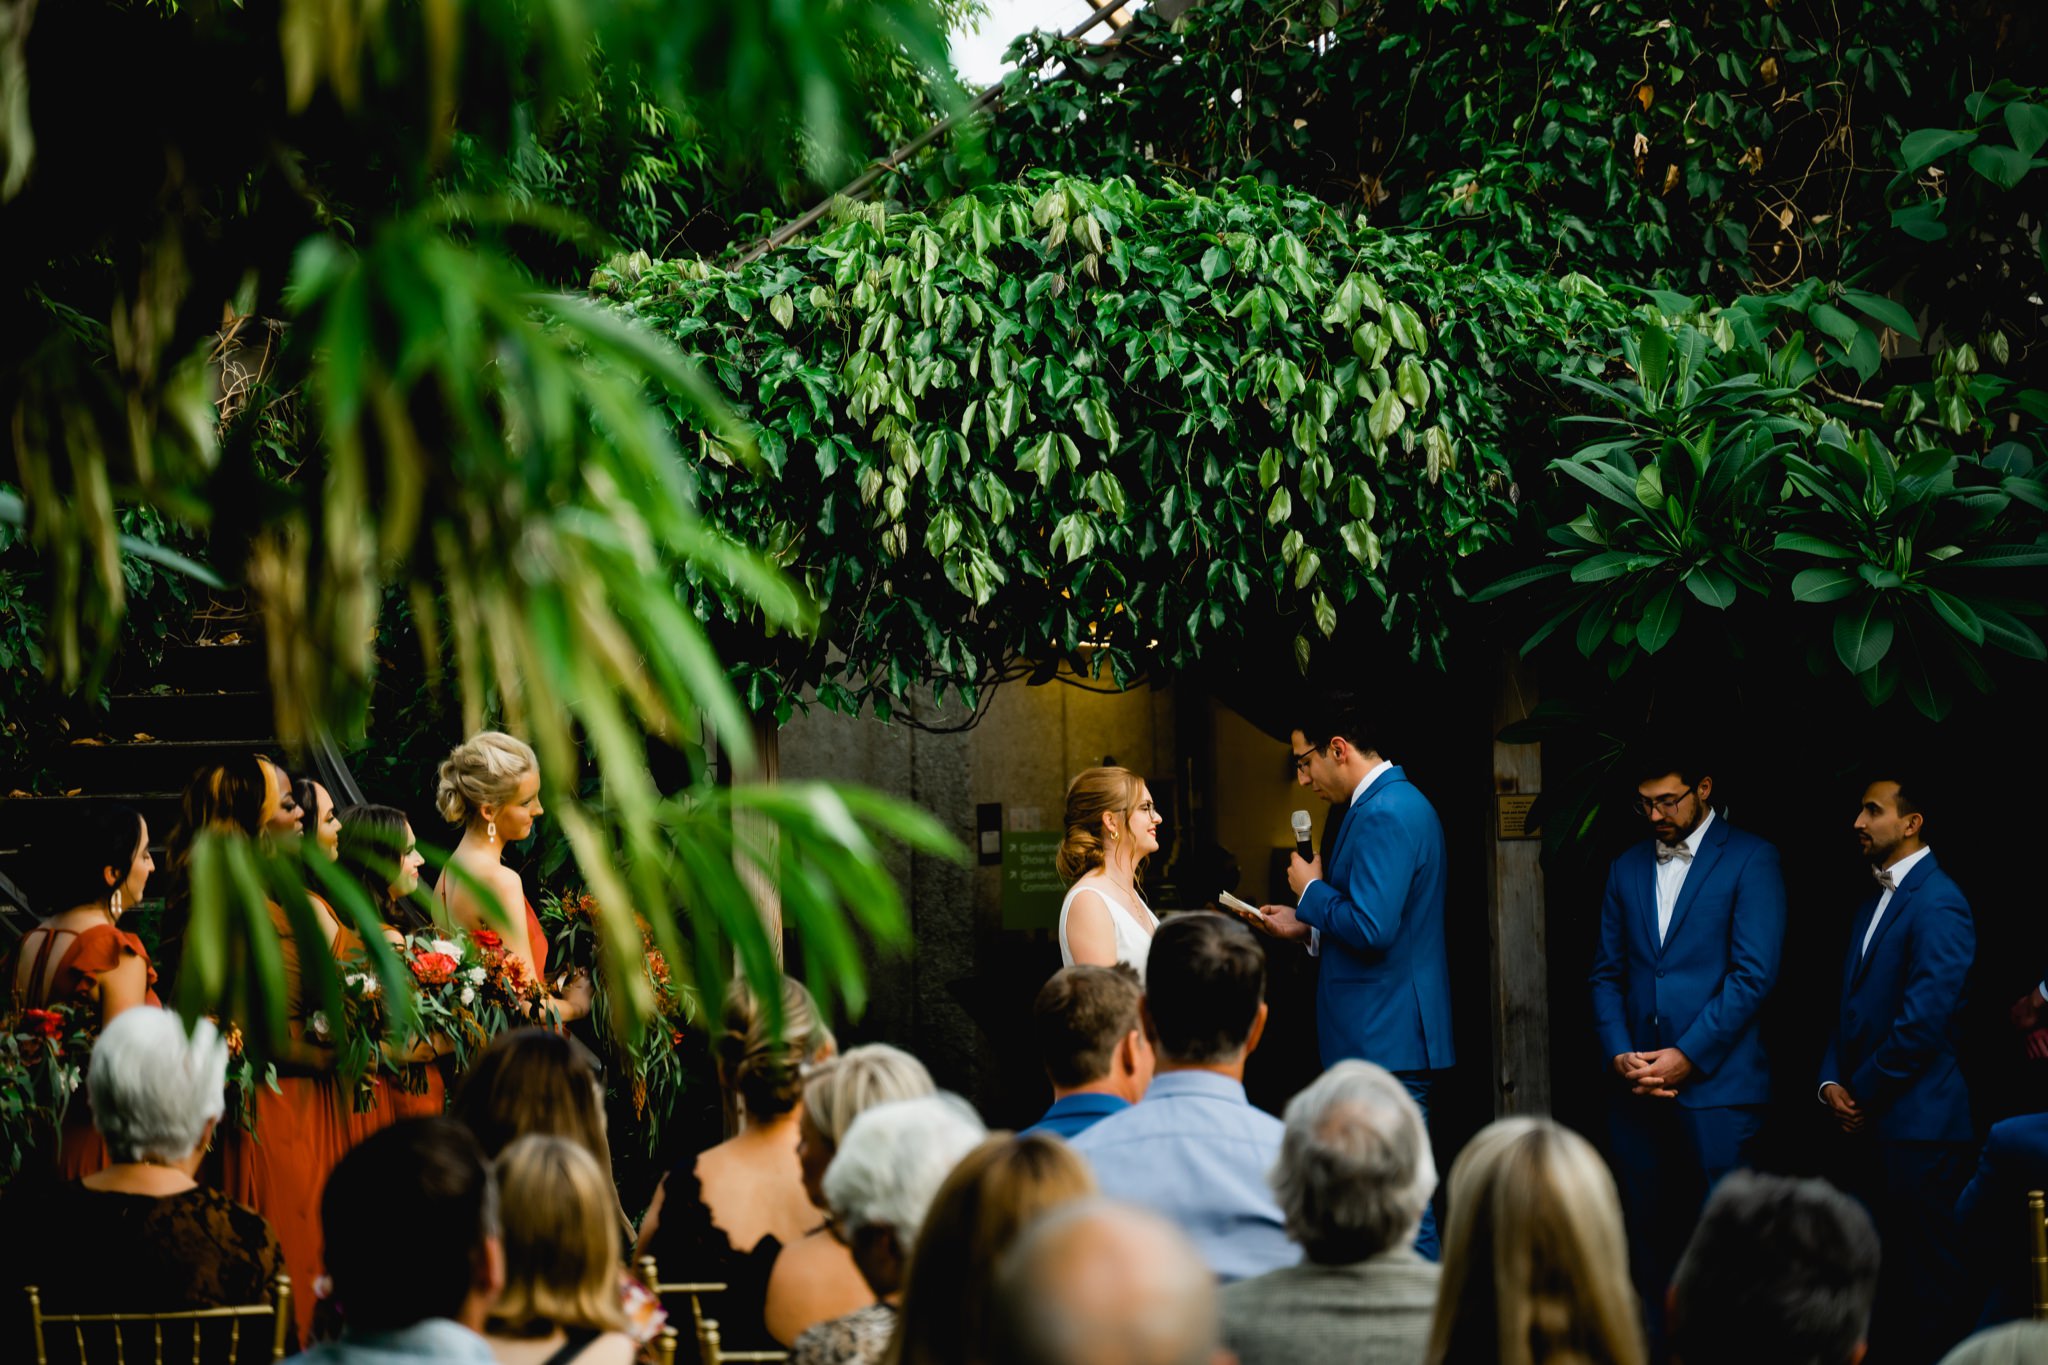 des moines botanical garden wedding